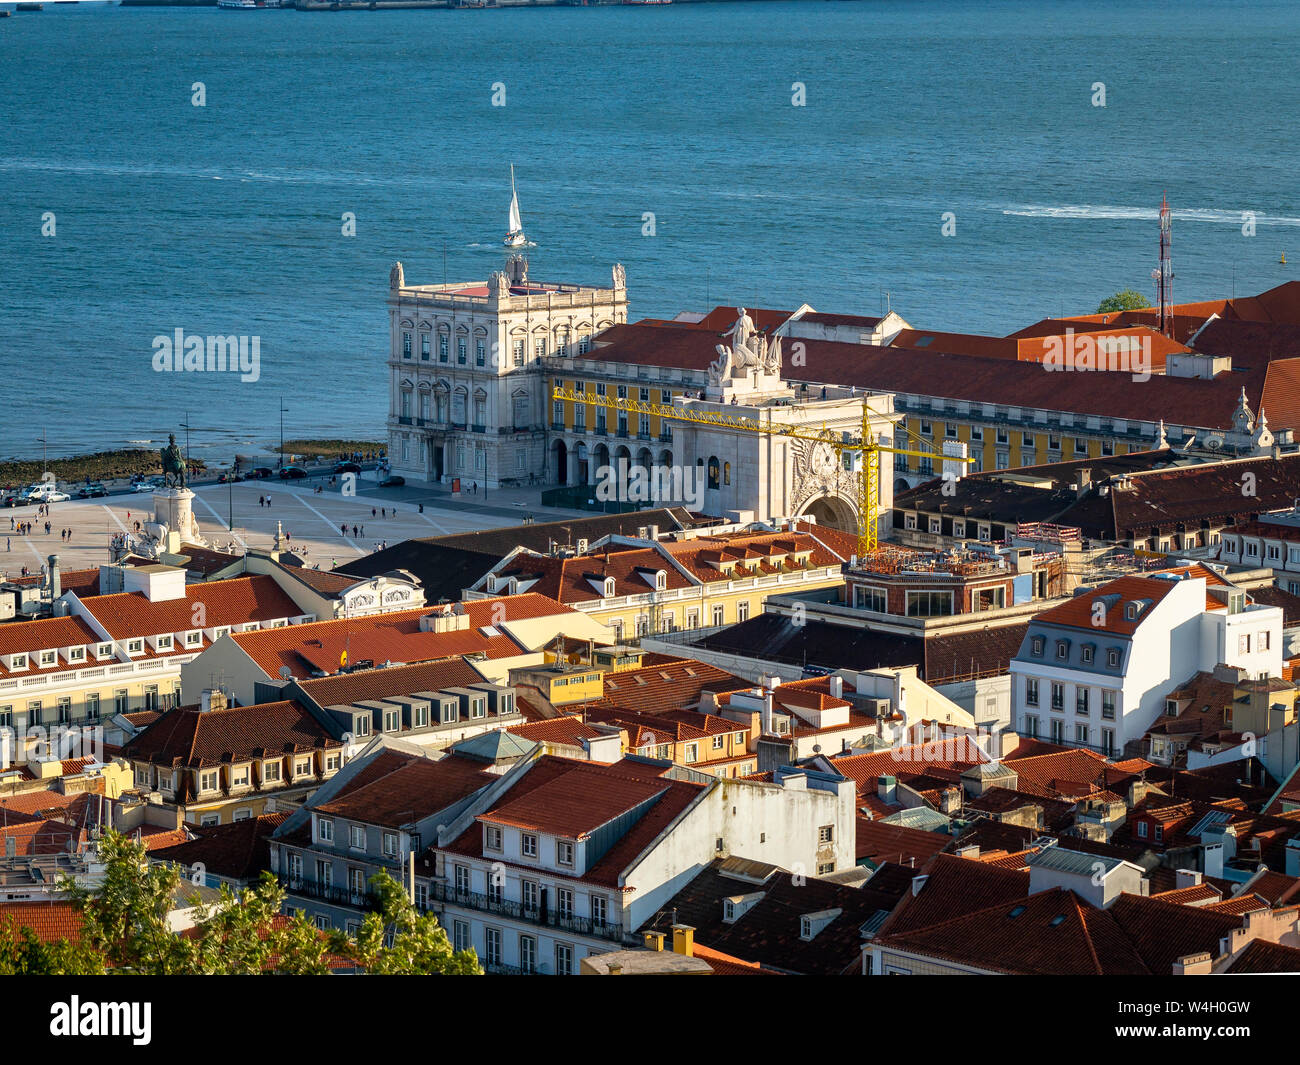 In vista della città di fiume Tejo da Miradouro da Nossa Senhora do Monte, Lisbona, Portogallo Foto Stock